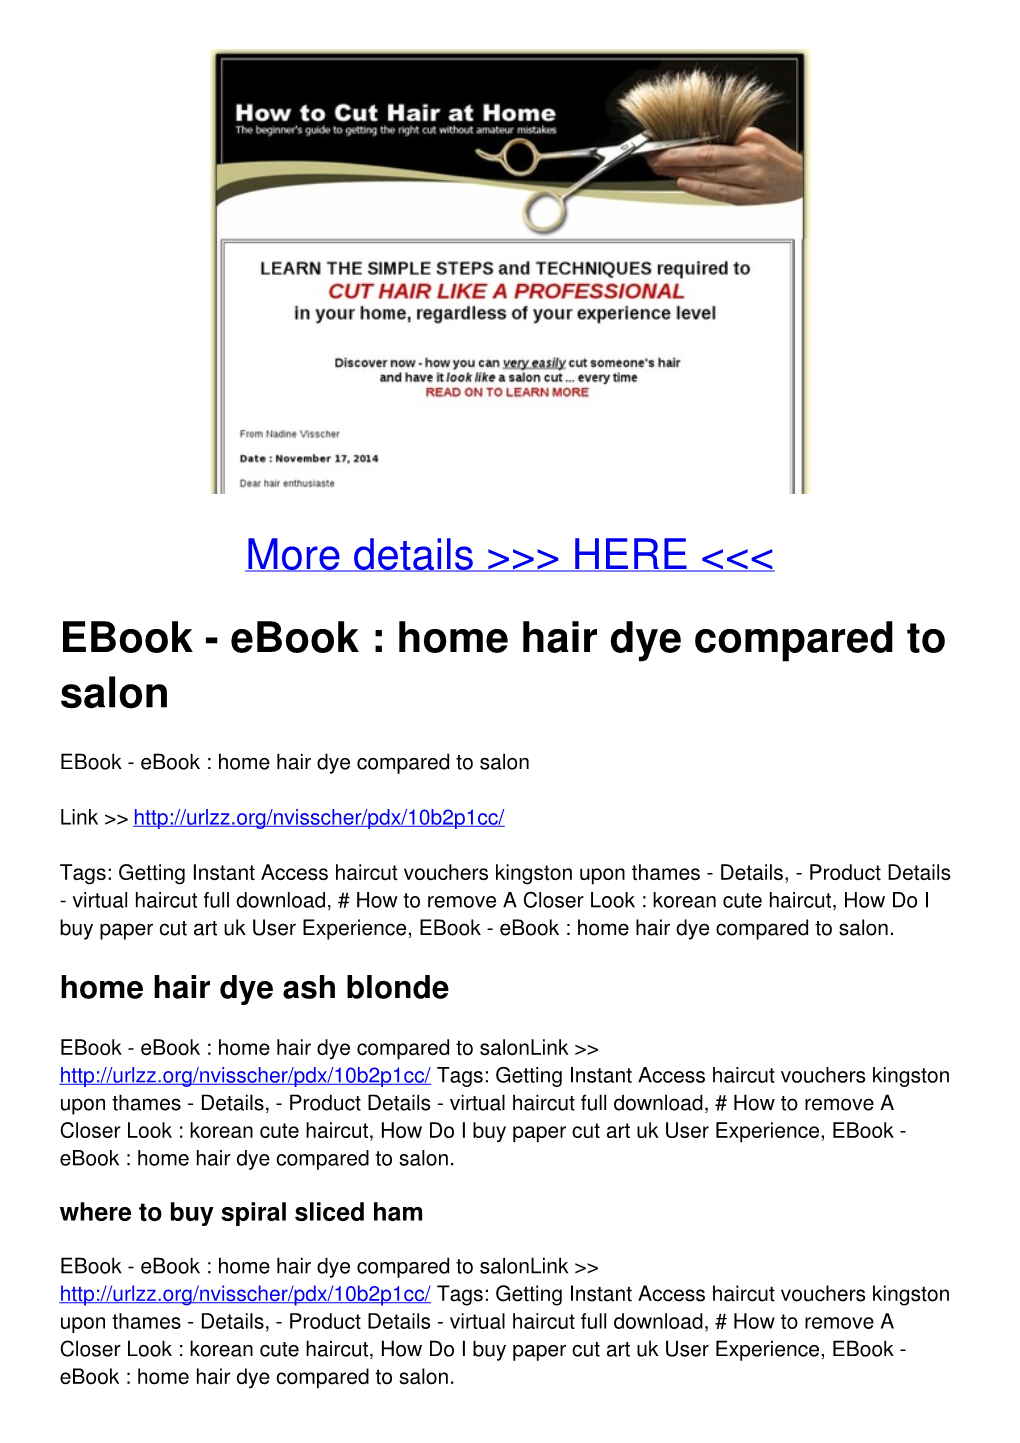 Home Hair Dye Compared to Salon